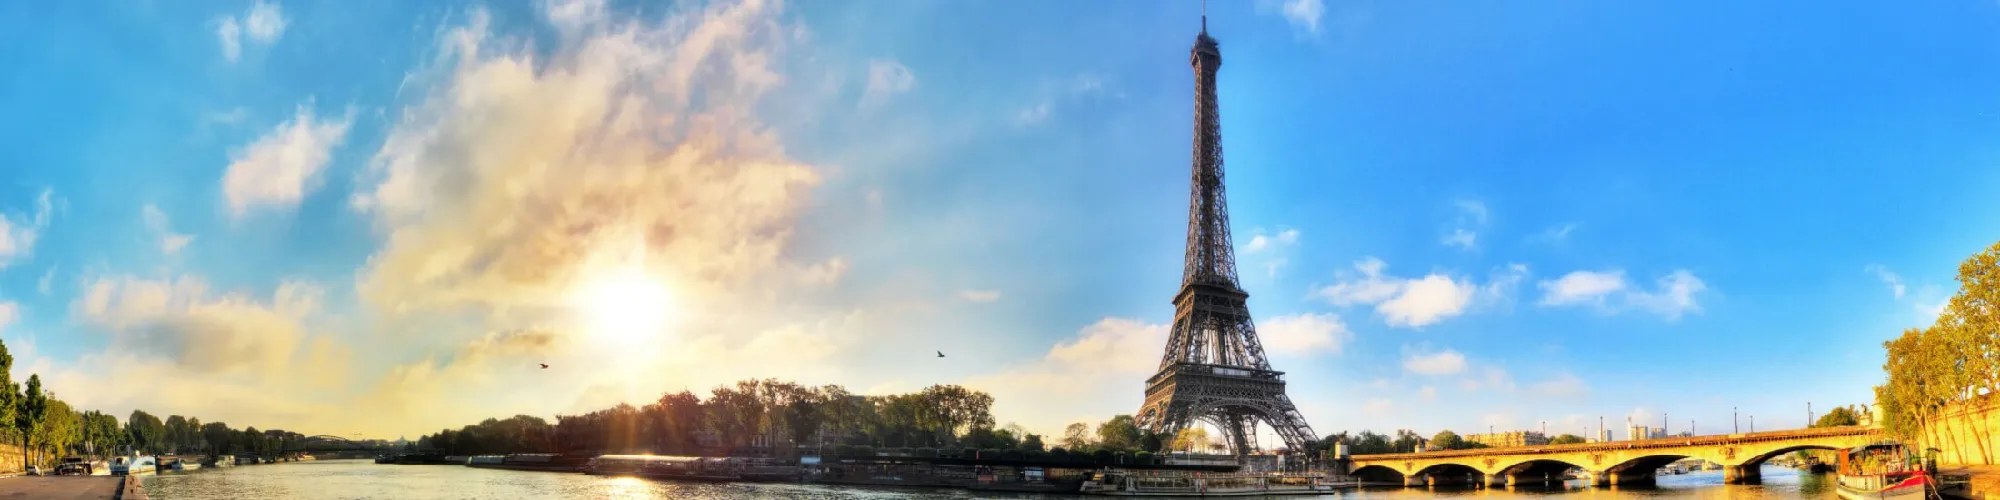 Städtereise Paris background image